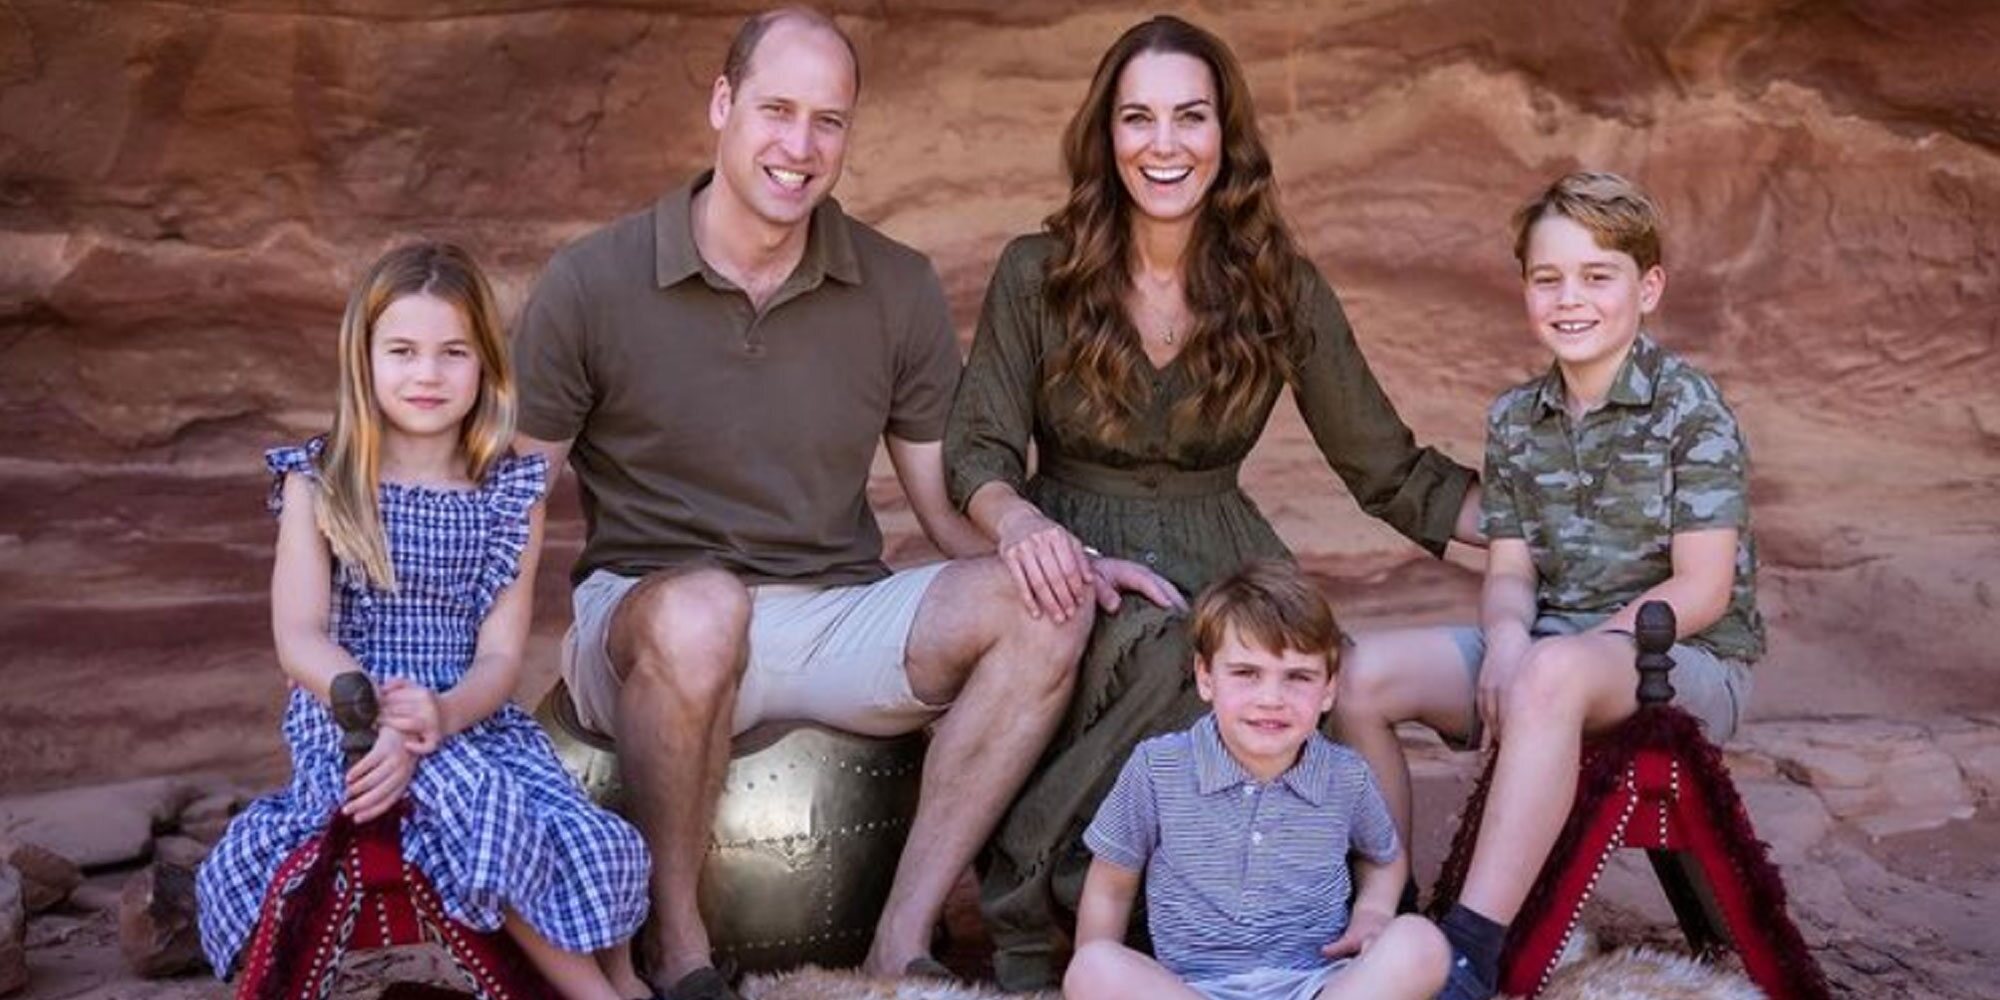 La foto del Príncipe Guillermo y Kate Middleton con sus hijos para felicitar la Navidad que muestra que cumplen sus promesas